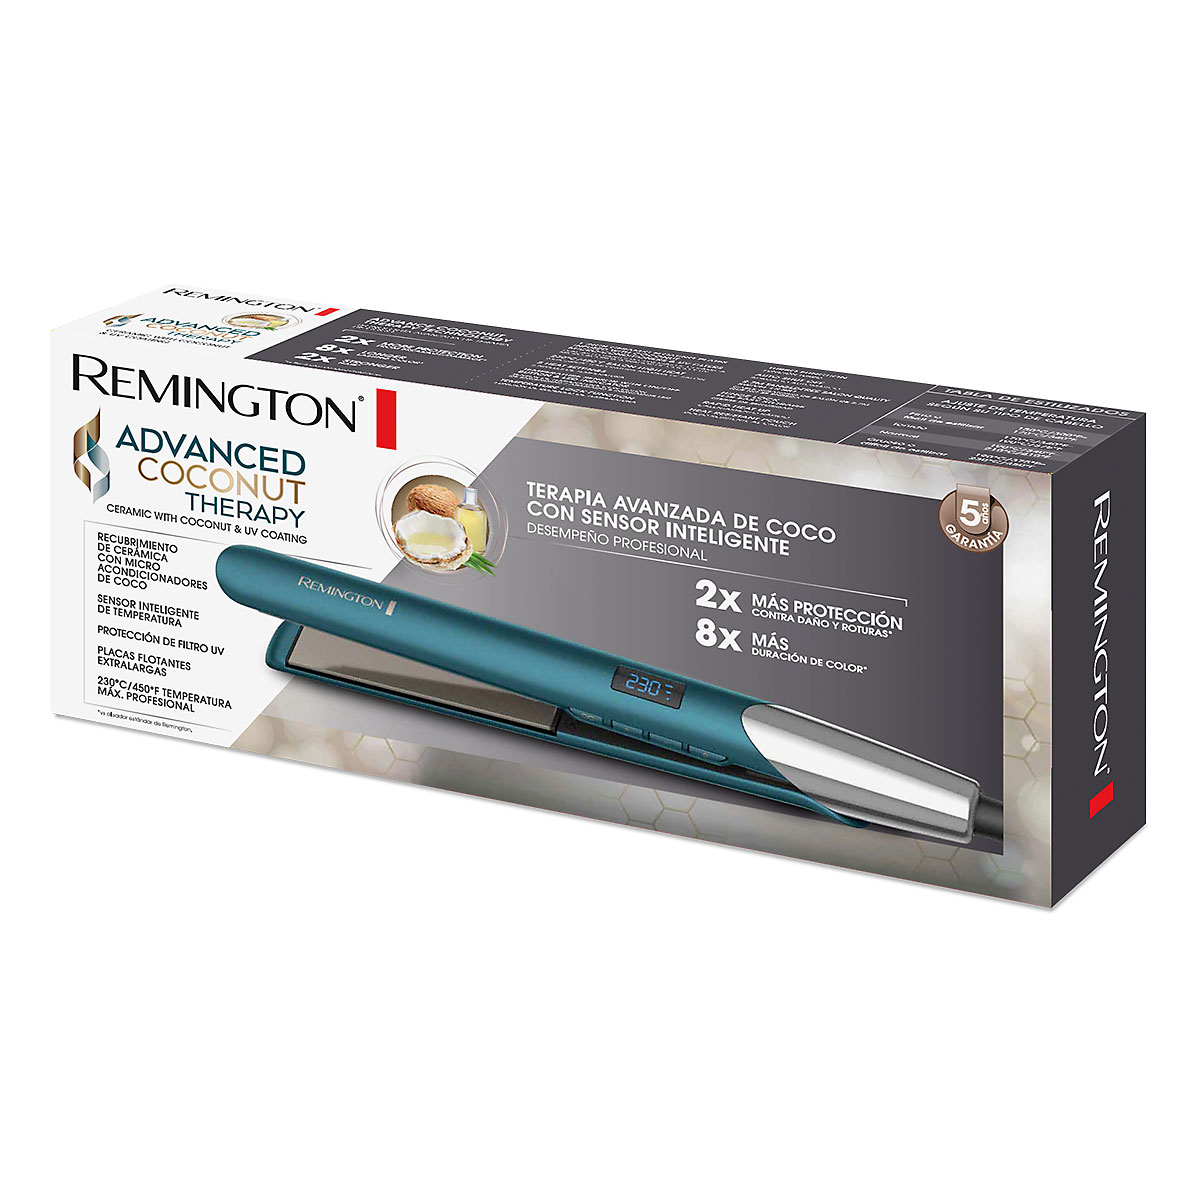 Plancha alisadora remington keratin therapy con microacondicionador de  keratina y aceite de argán, s8599-110f